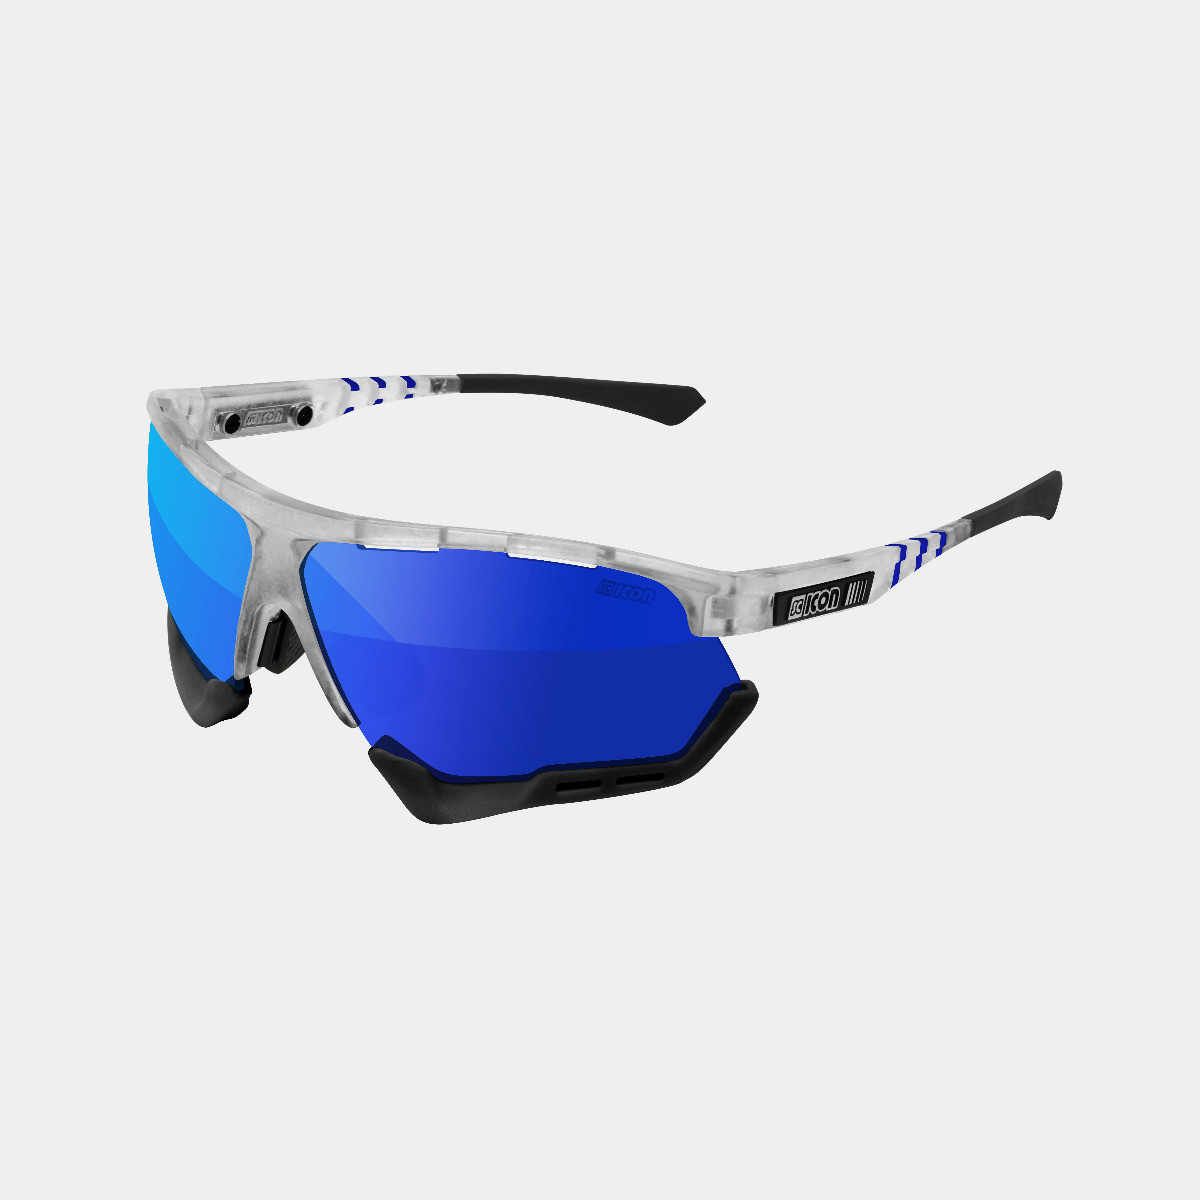 Aerocomfort performance sunglasses scnpp frozen frame blue lenses EY19030502
